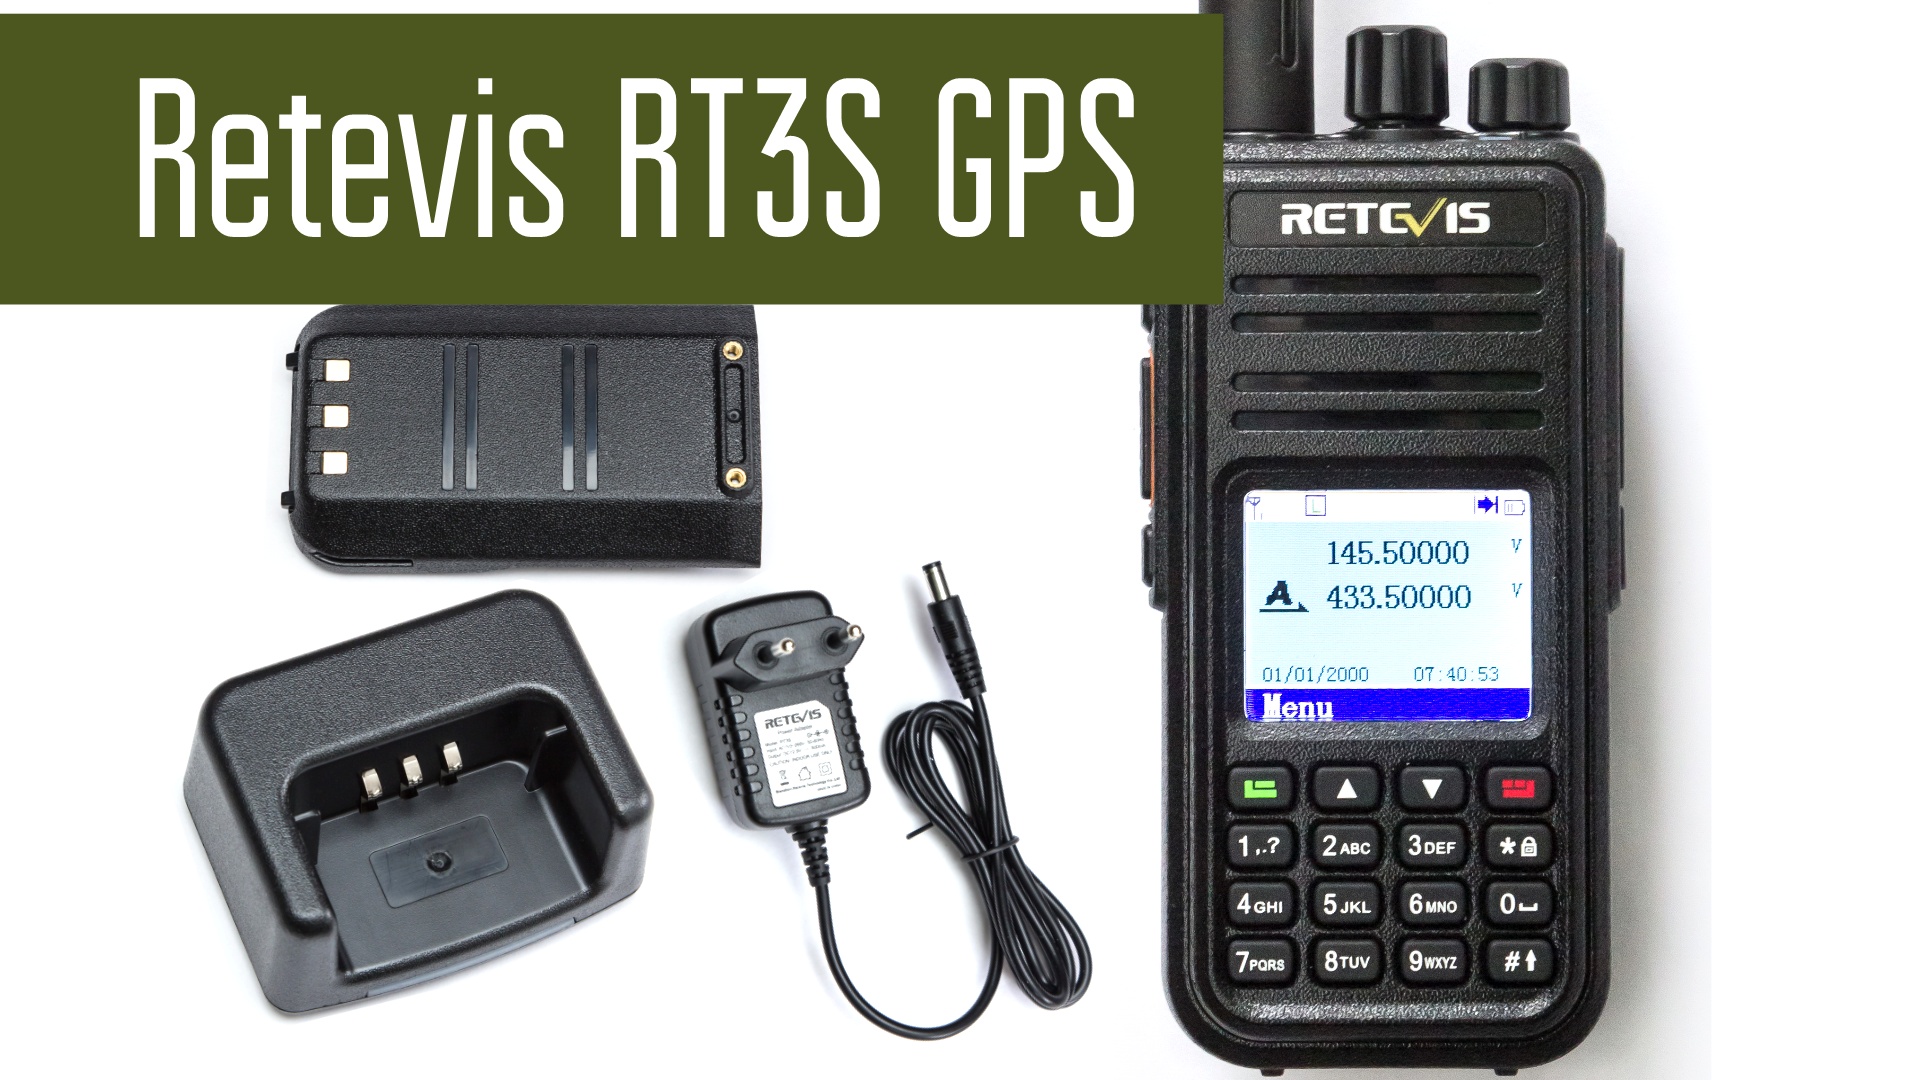 Retevis RT3S GPS - DMR радиостанция с Recorder-ом. Обзор, программирование, разборка.